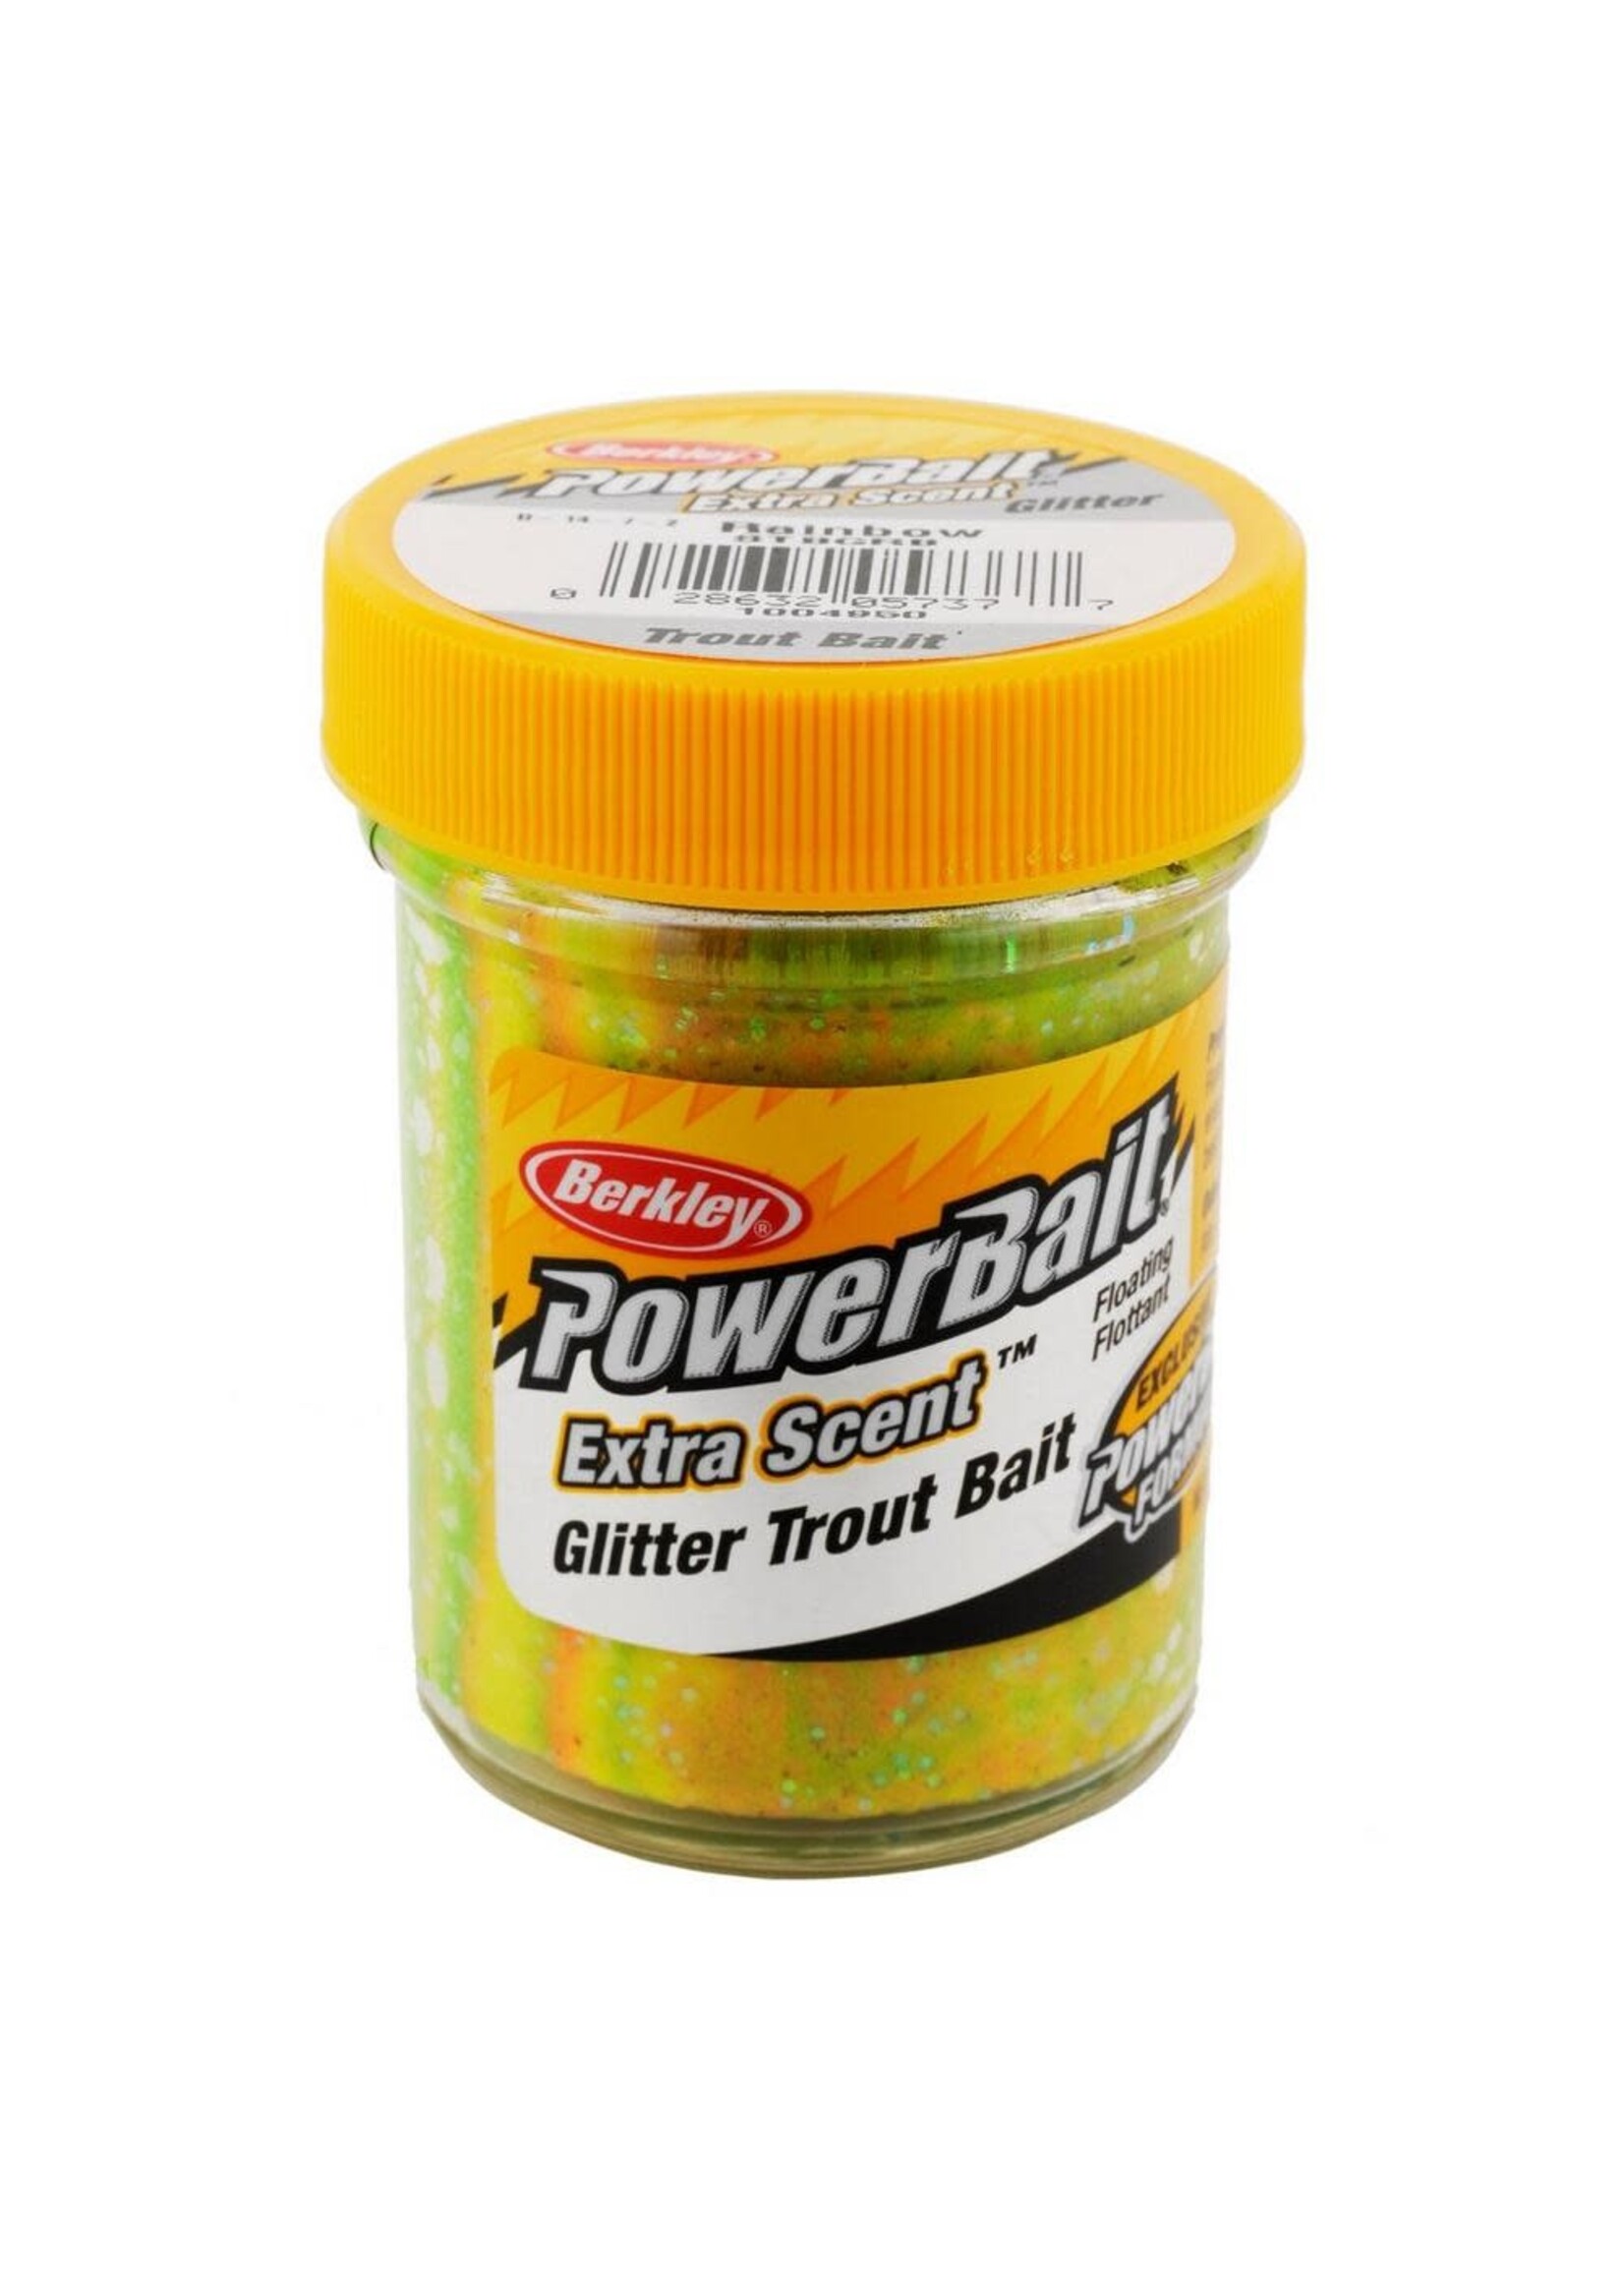 Berkley Fishing PowerBait Glitter Trout Bait